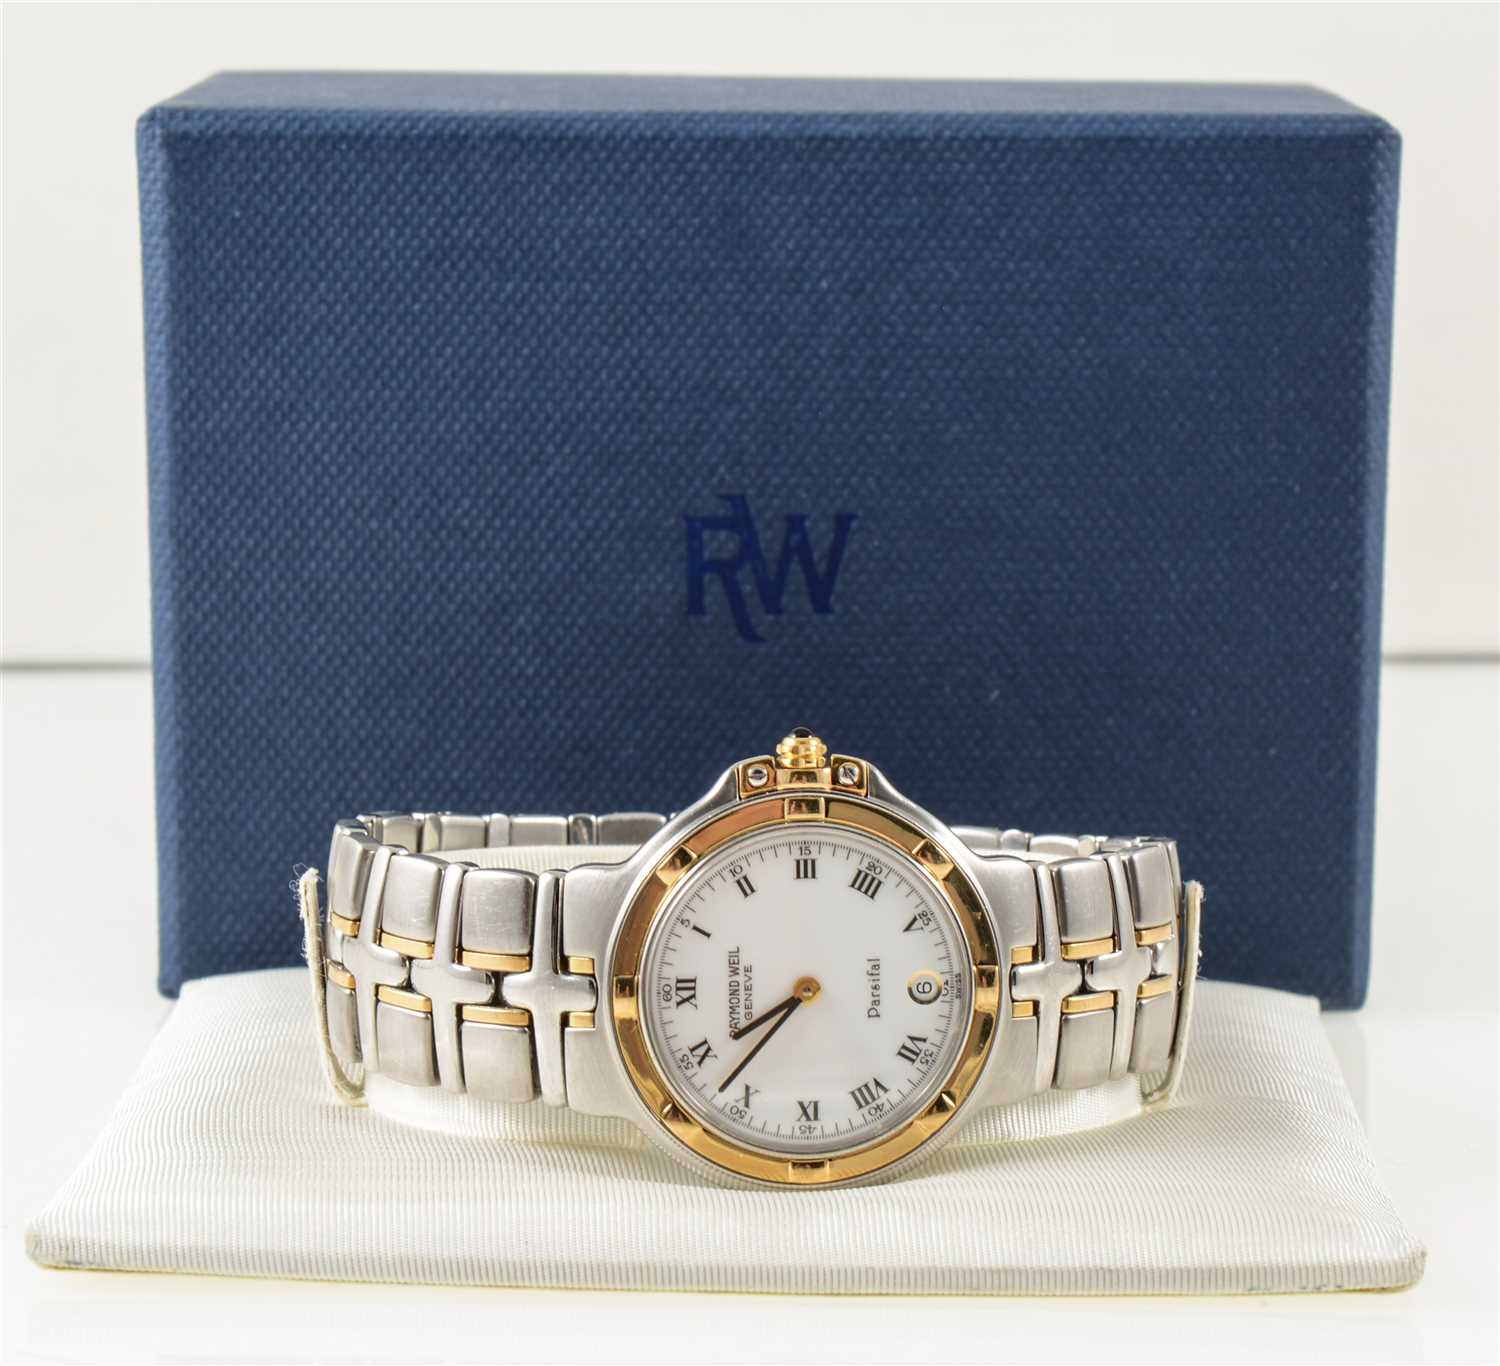 Lot 296 - Raymond Weil - a gentleman's Parisfal Geneve quartz wrist watch